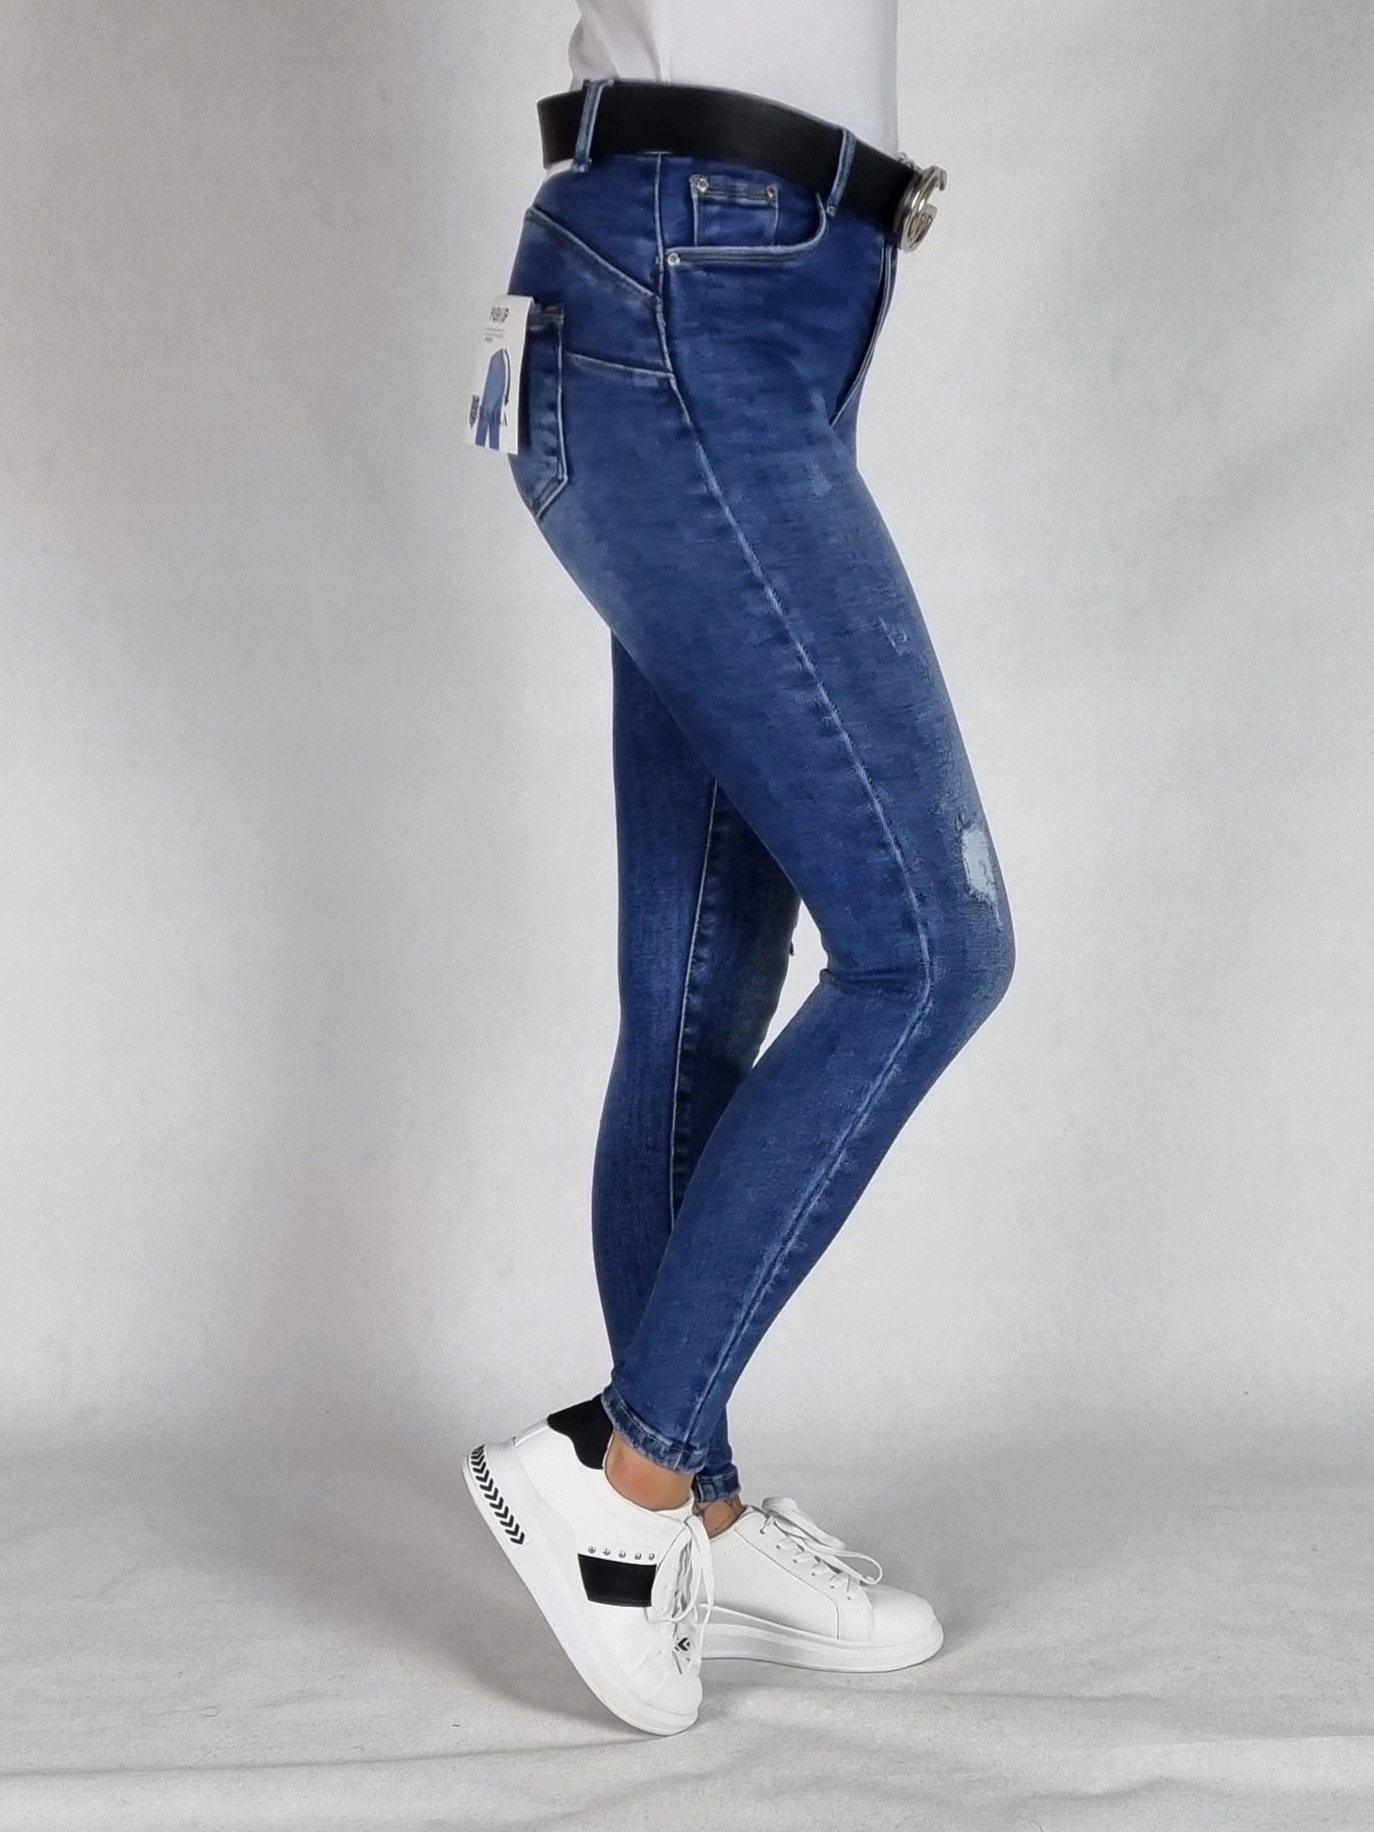 M. SARA джинсовые брюки с отверстиями размер 28 Brand other Brand